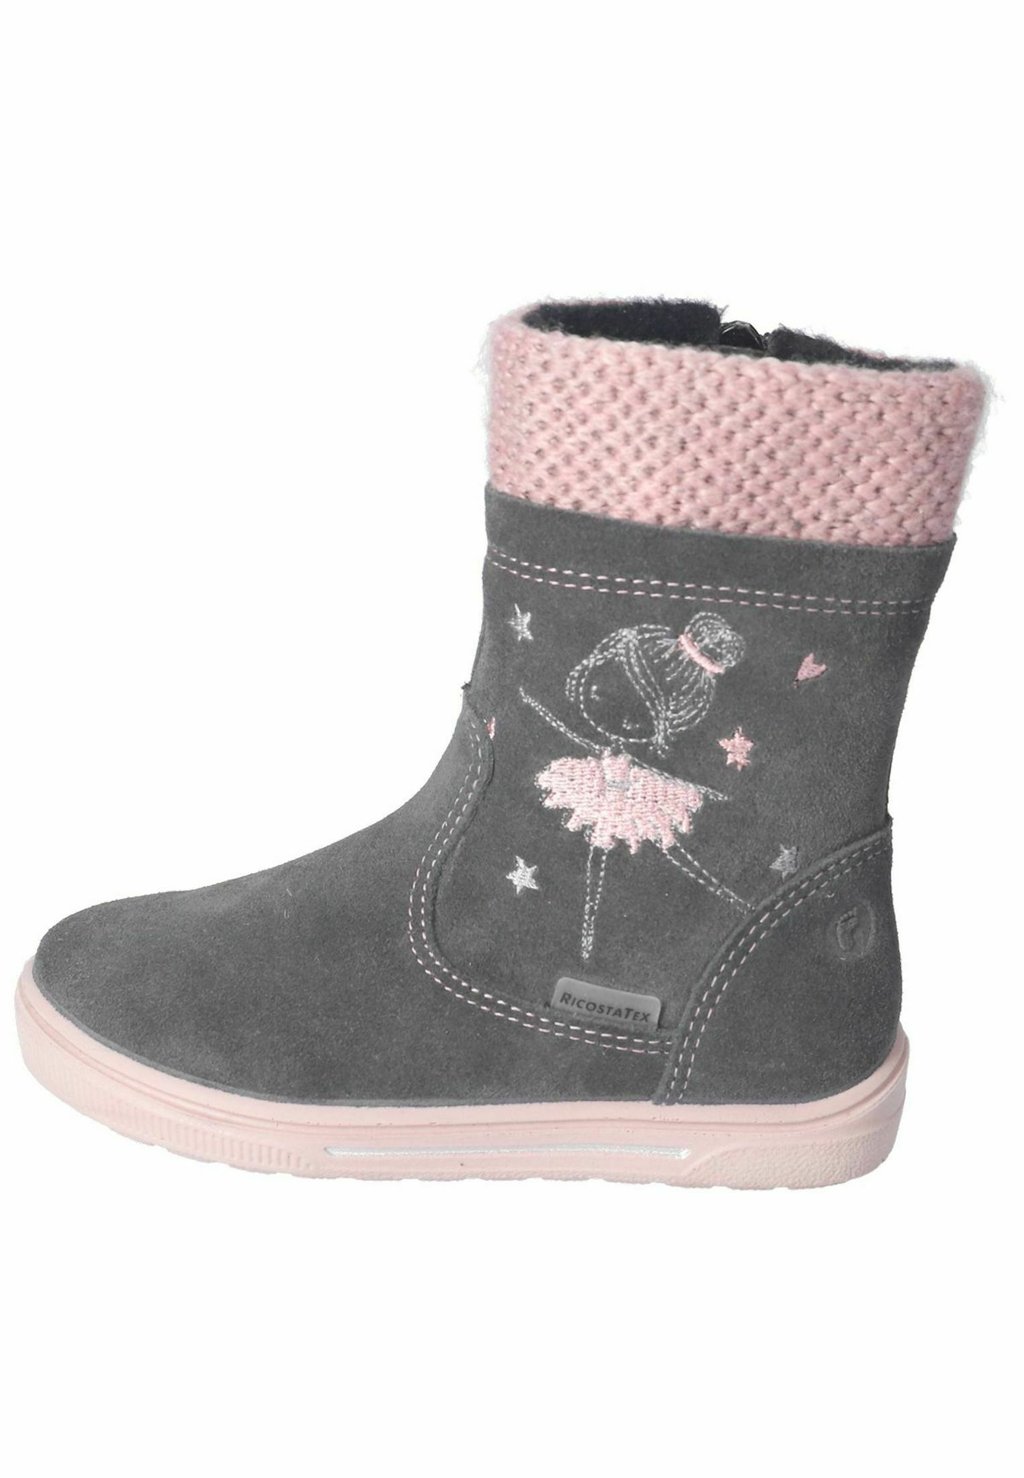 Снегоступы/зимние ботинки Ricosta, цвет asphalt rose